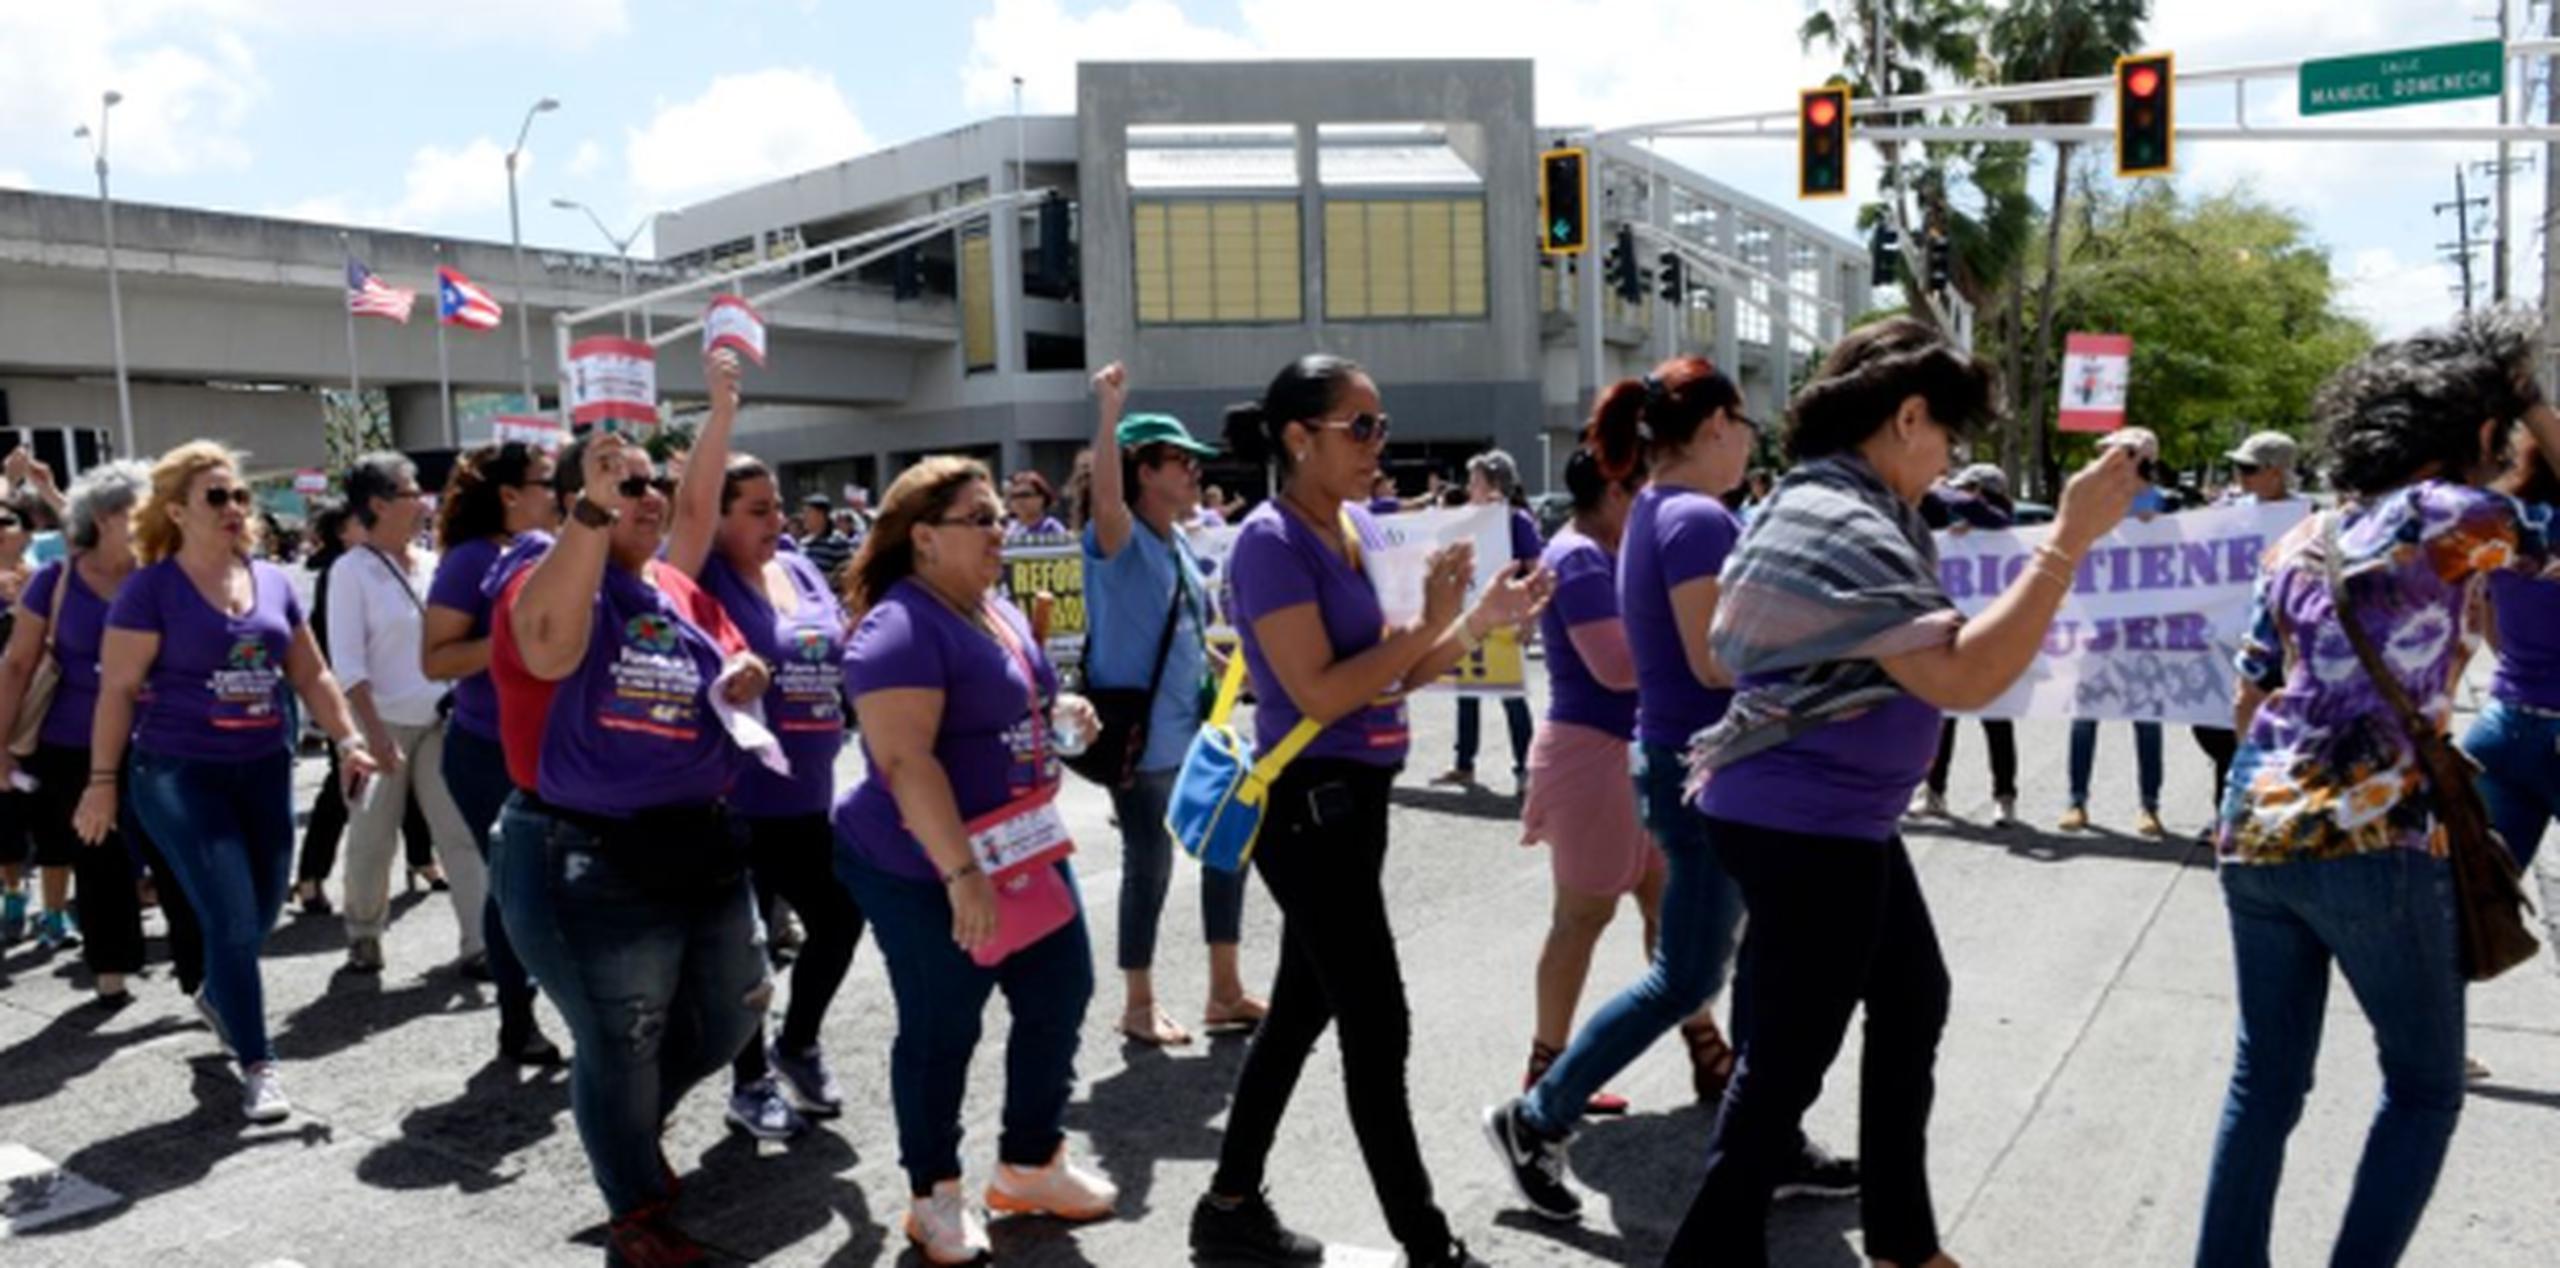 A partir de las 11:00 de la mañana distintos grupos de mujeres salieron a protestar y paralizaron sus labores con el fin de visibilizar su trabajo y rol protagónico en el País. (gerald.lopez@gfrmedia.com)